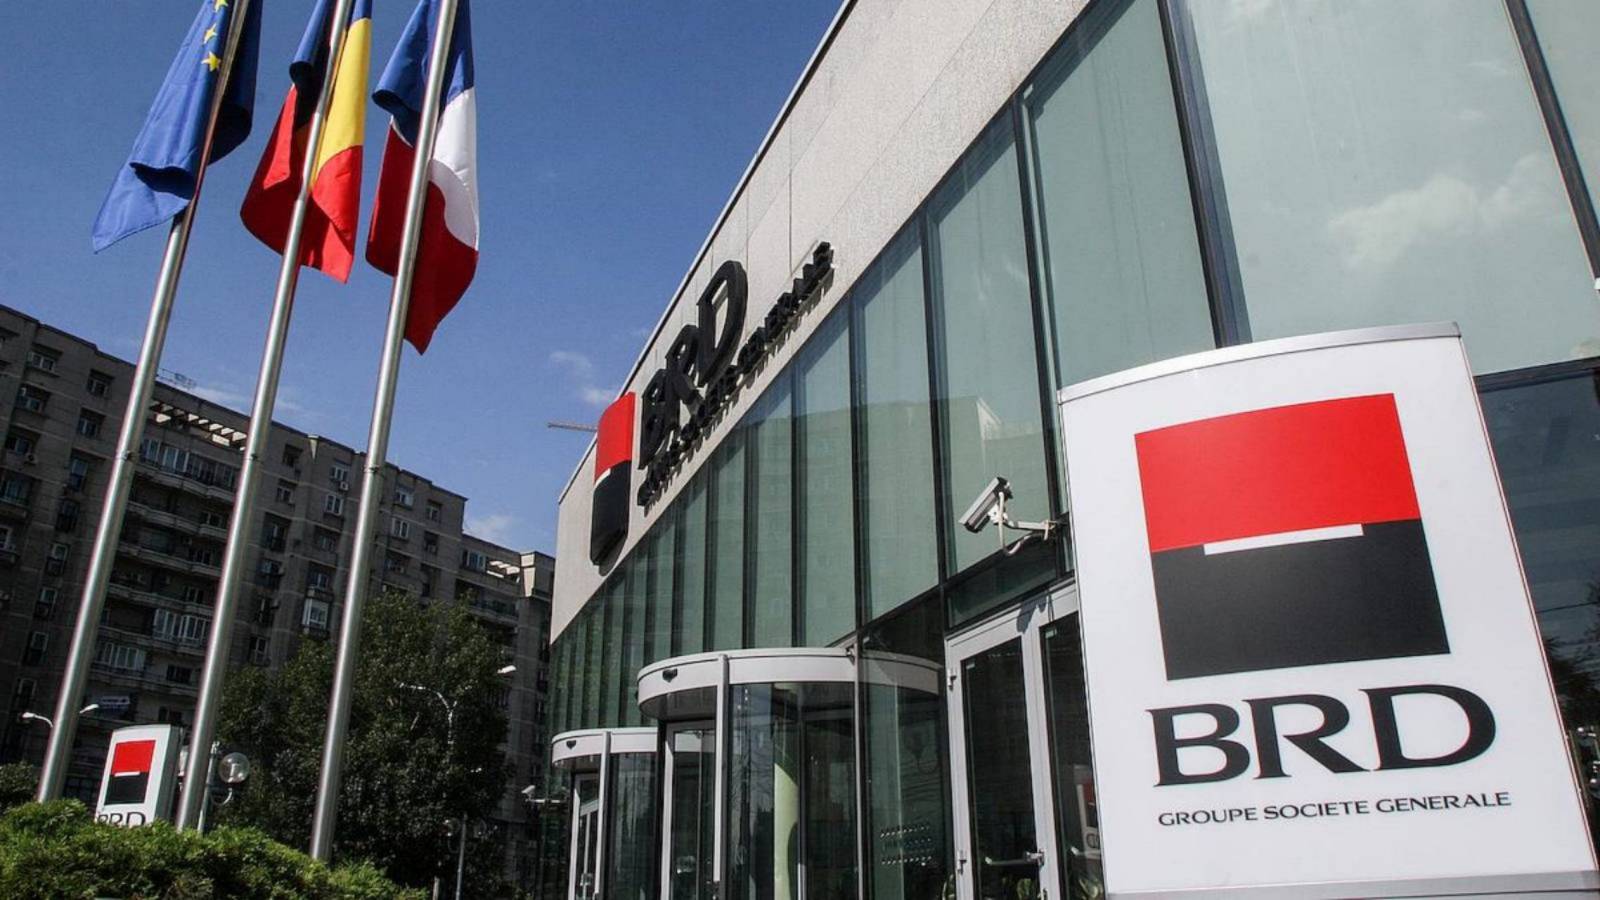 Les clients de BRD Roumanie informés, méfiez-vous des attaques informatiques